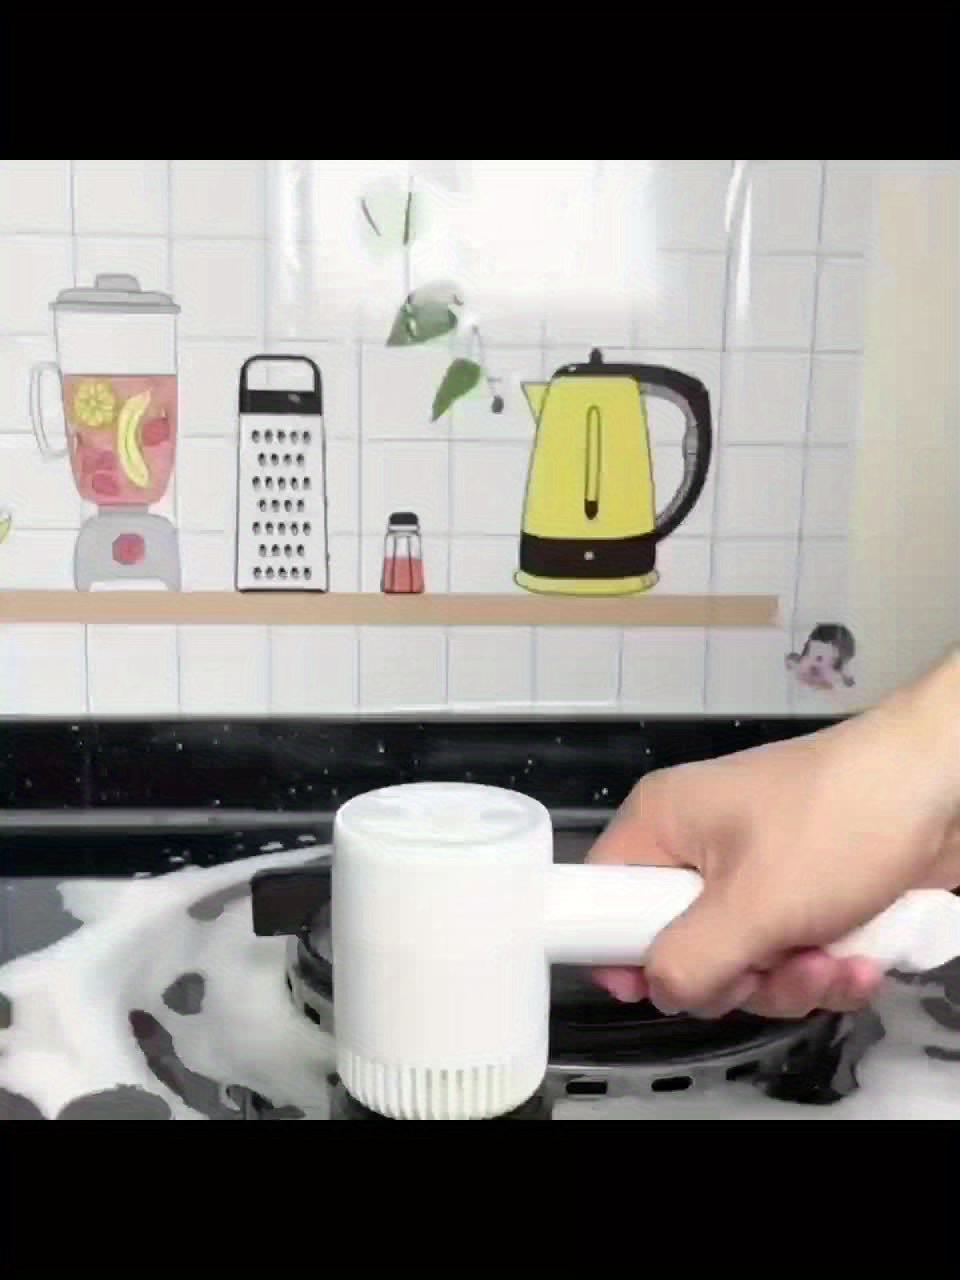 Cepillo Eléctrico para limpieza de cocina y hogar 5 en 1 – Koldepot